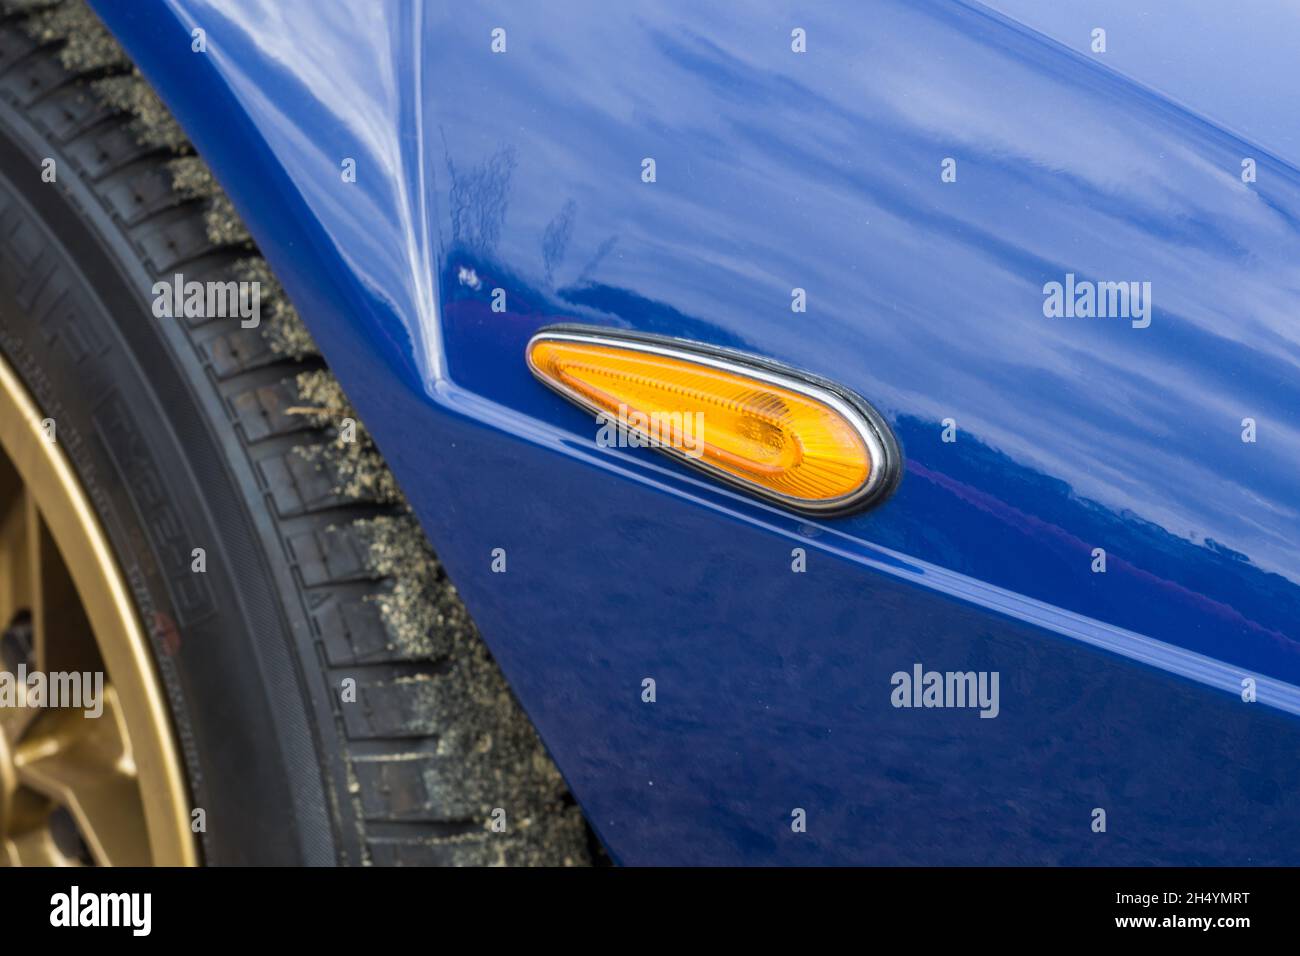 Nahaufnahme der Seitenanzeige eines blauen Lancia Stratos HF Stradale klassischen italienischen Sport-Rallye-Autos. Stockfoto